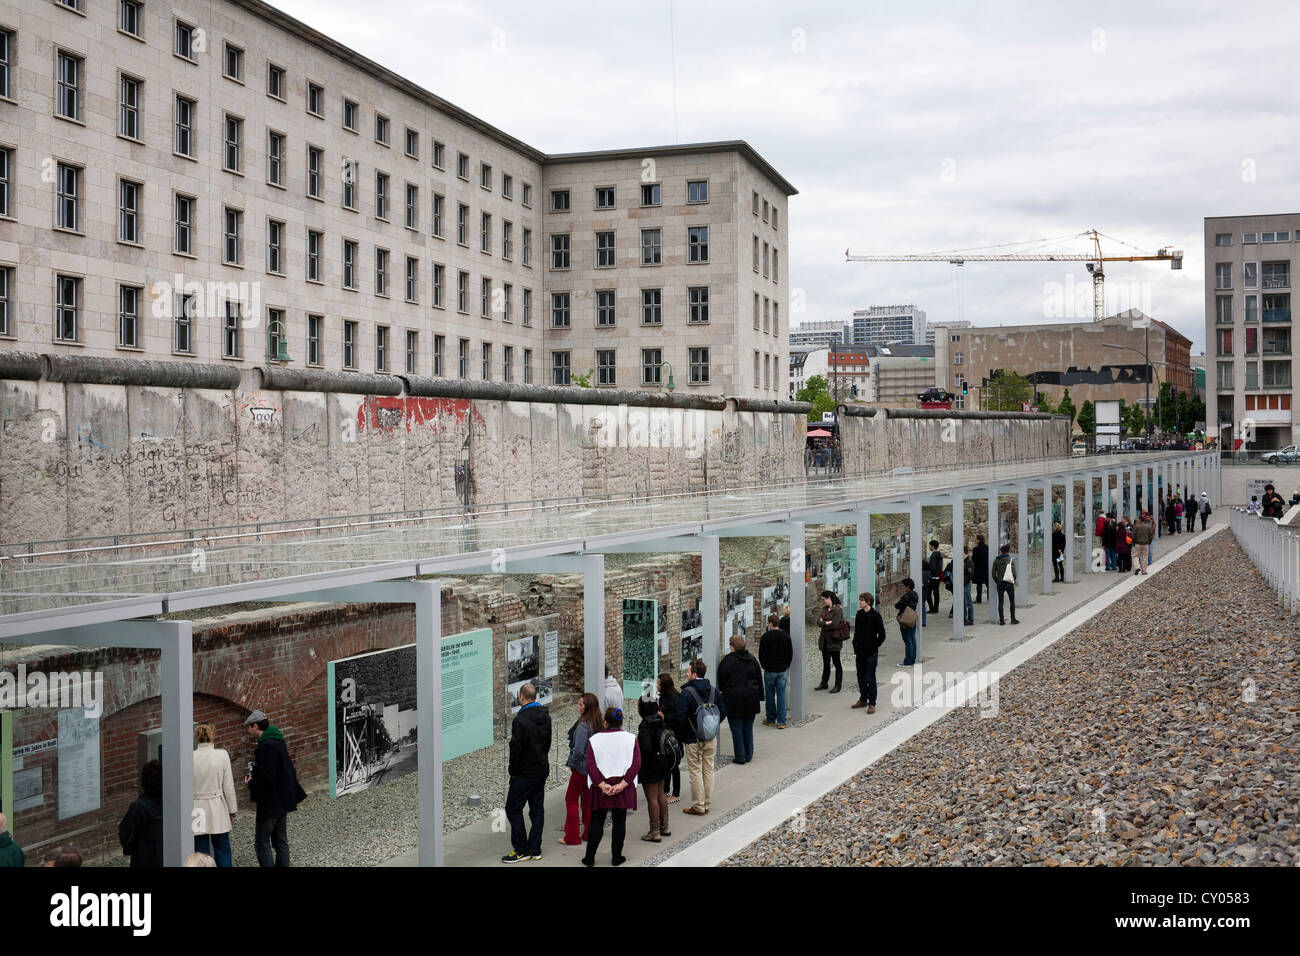 La exposición permanente "Topografía del Terror", de la calle Zimmerstrasse, distrito Mitte, Berlin Foto de stock